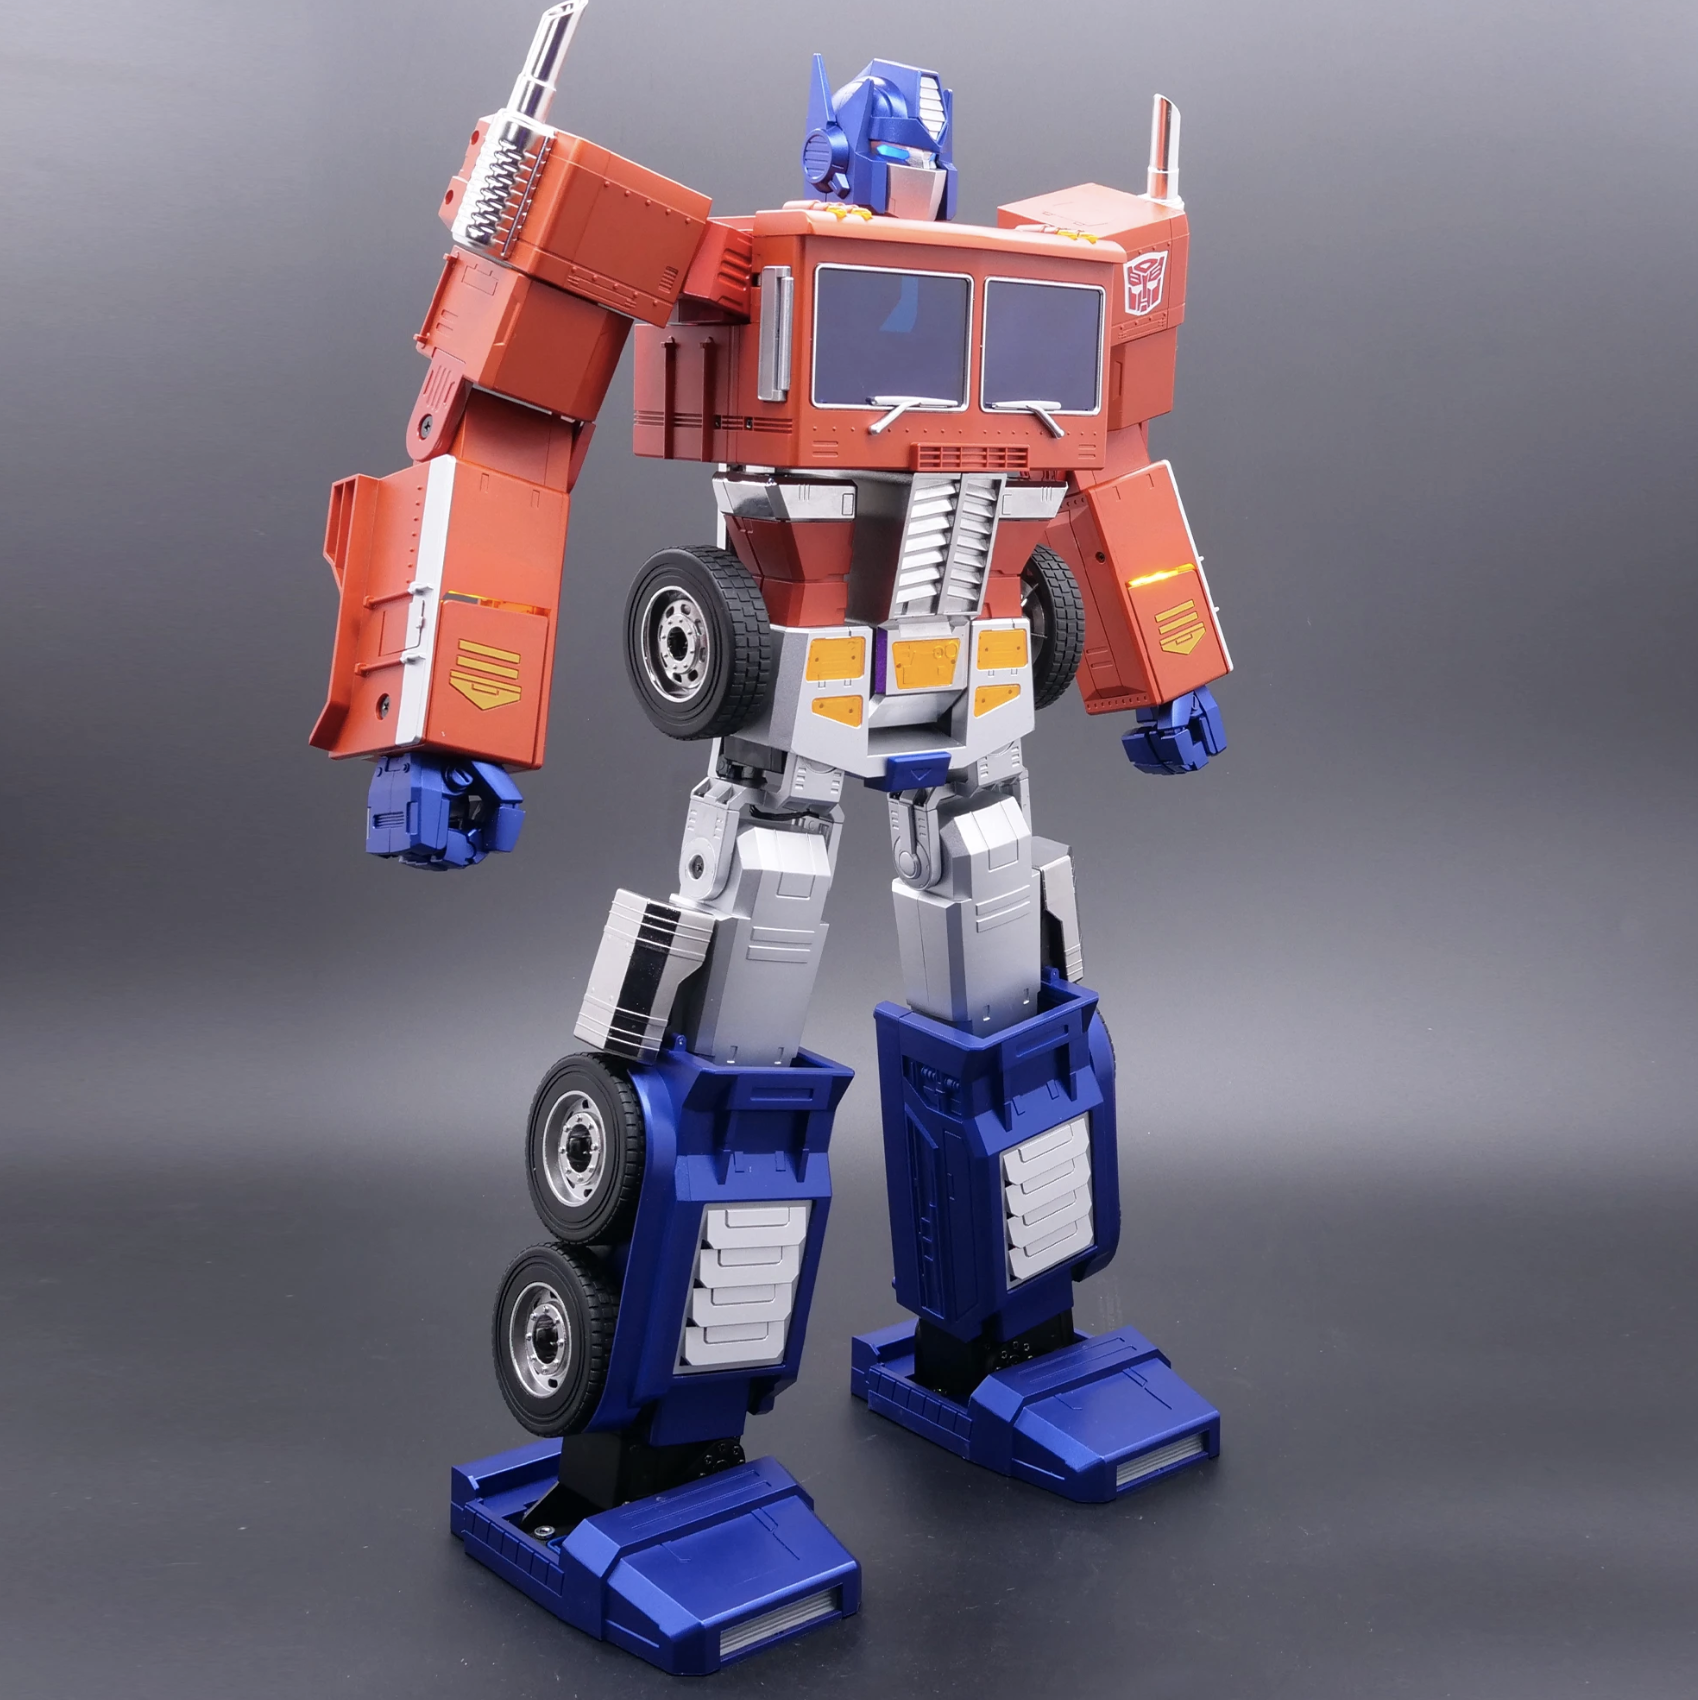 700 $ pour le dernier Transformers chez Hasbro... qui se transforme sur injonction vocale